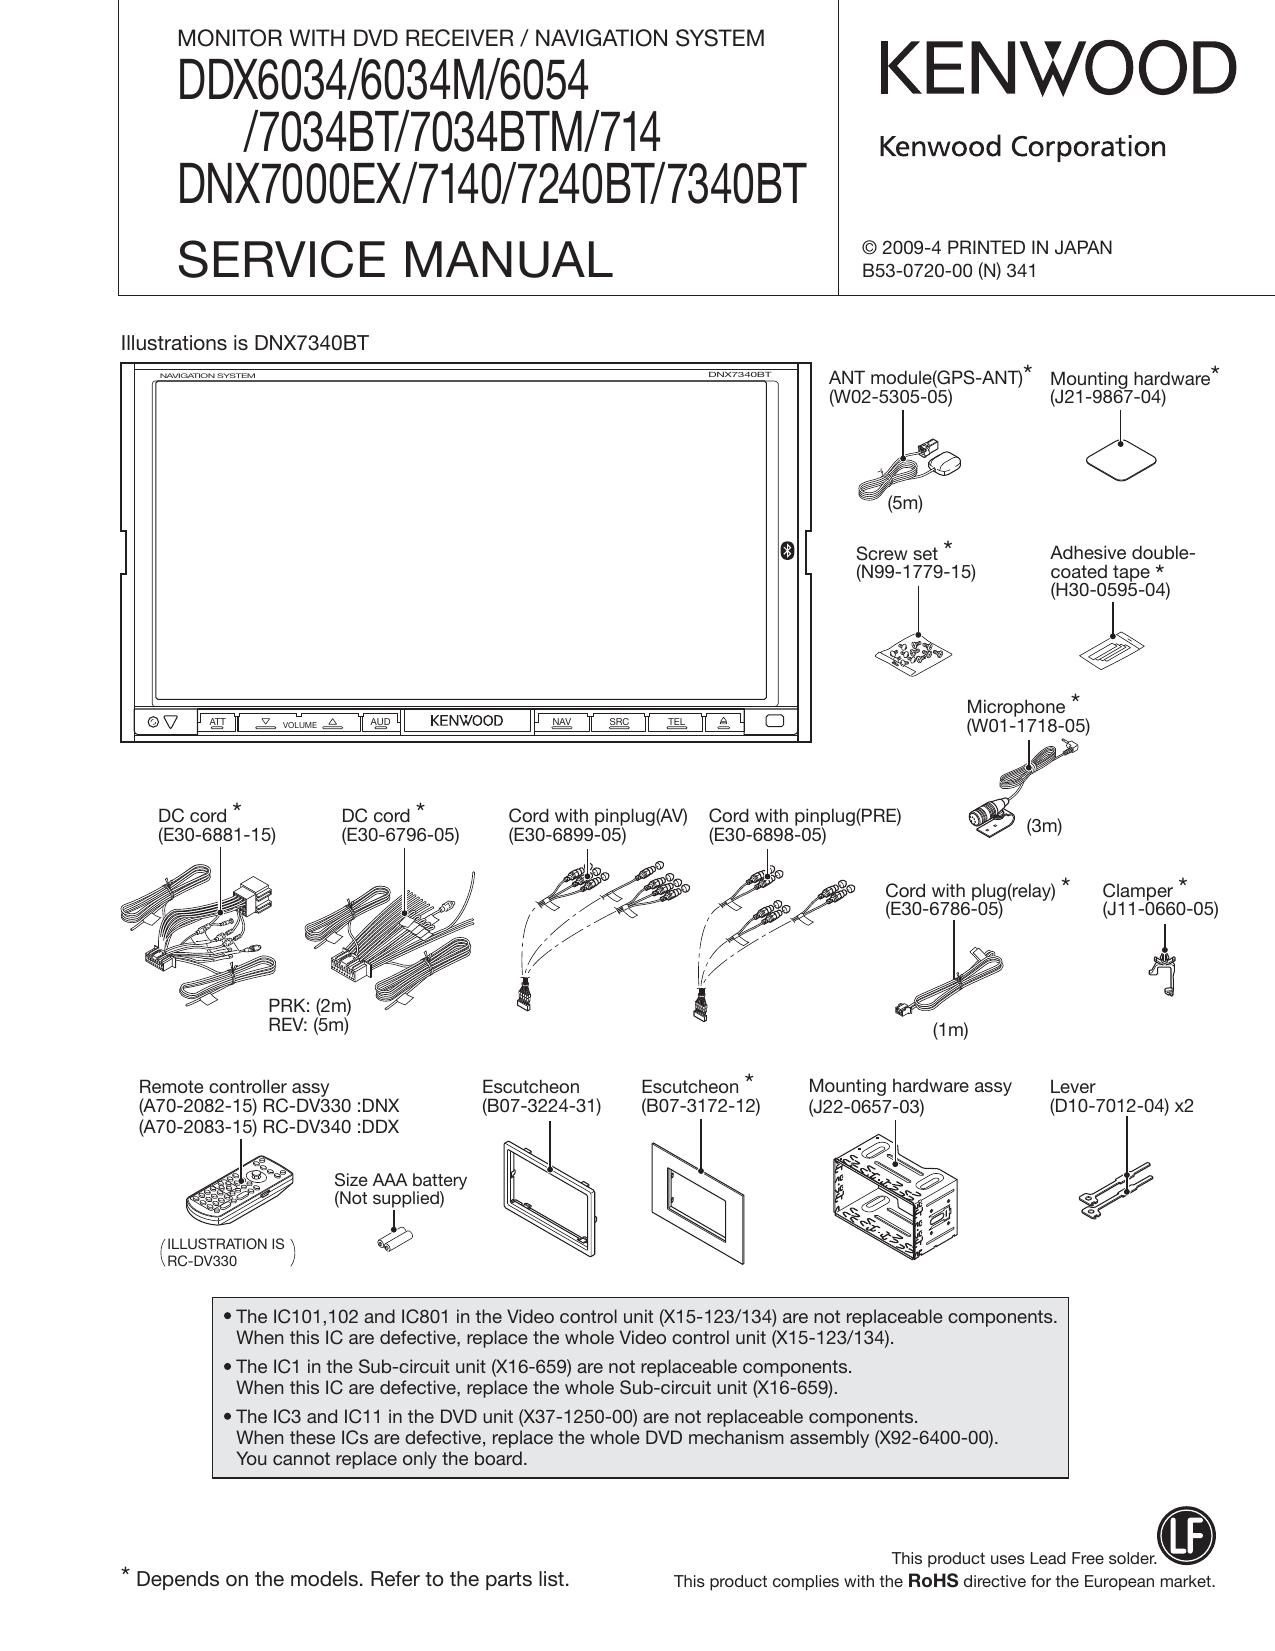 Kenwood DDX 7034 BTM Service Manual